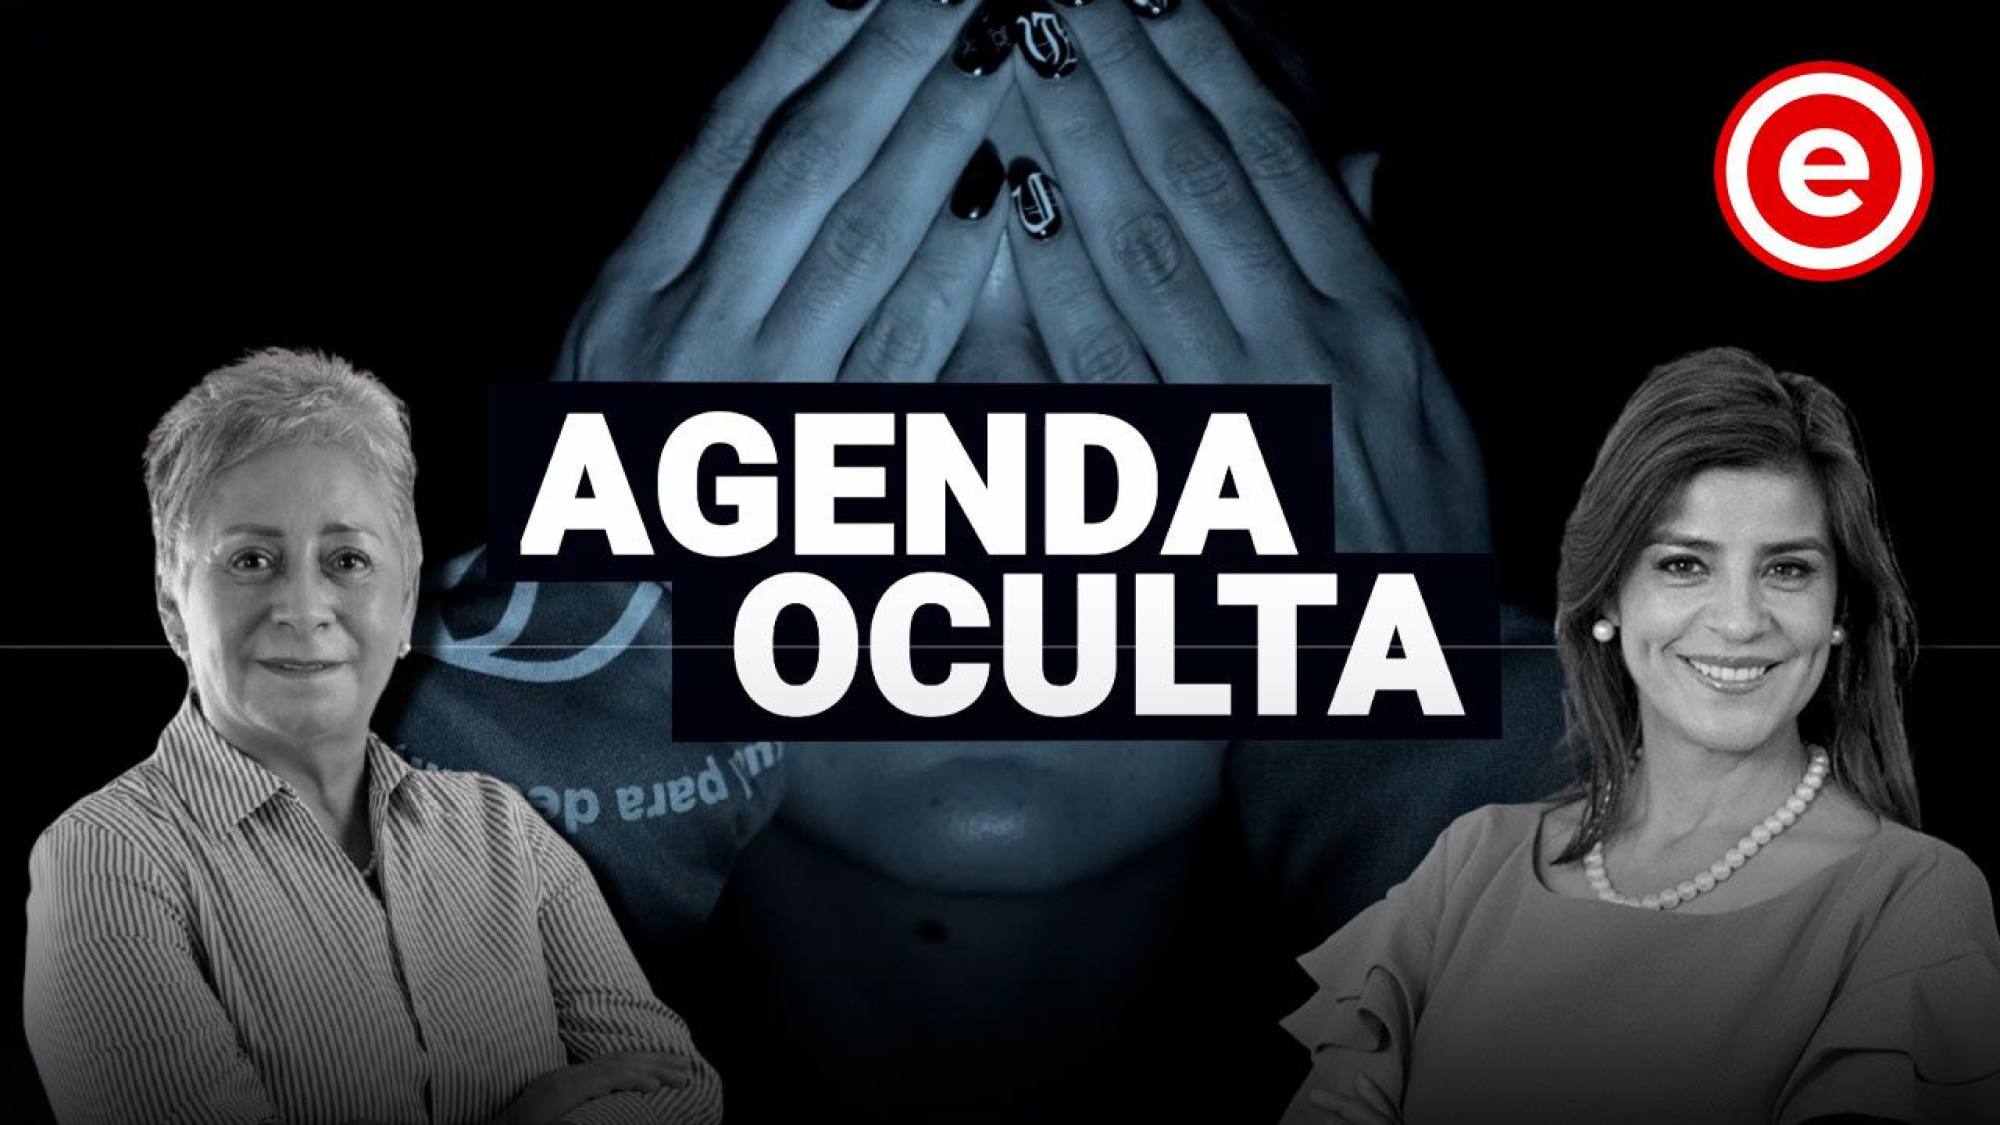 Agenda Oculta: Doble moral de empresas frente a los derechos LGTBIQ+ ¡y más!, Epicentro TV